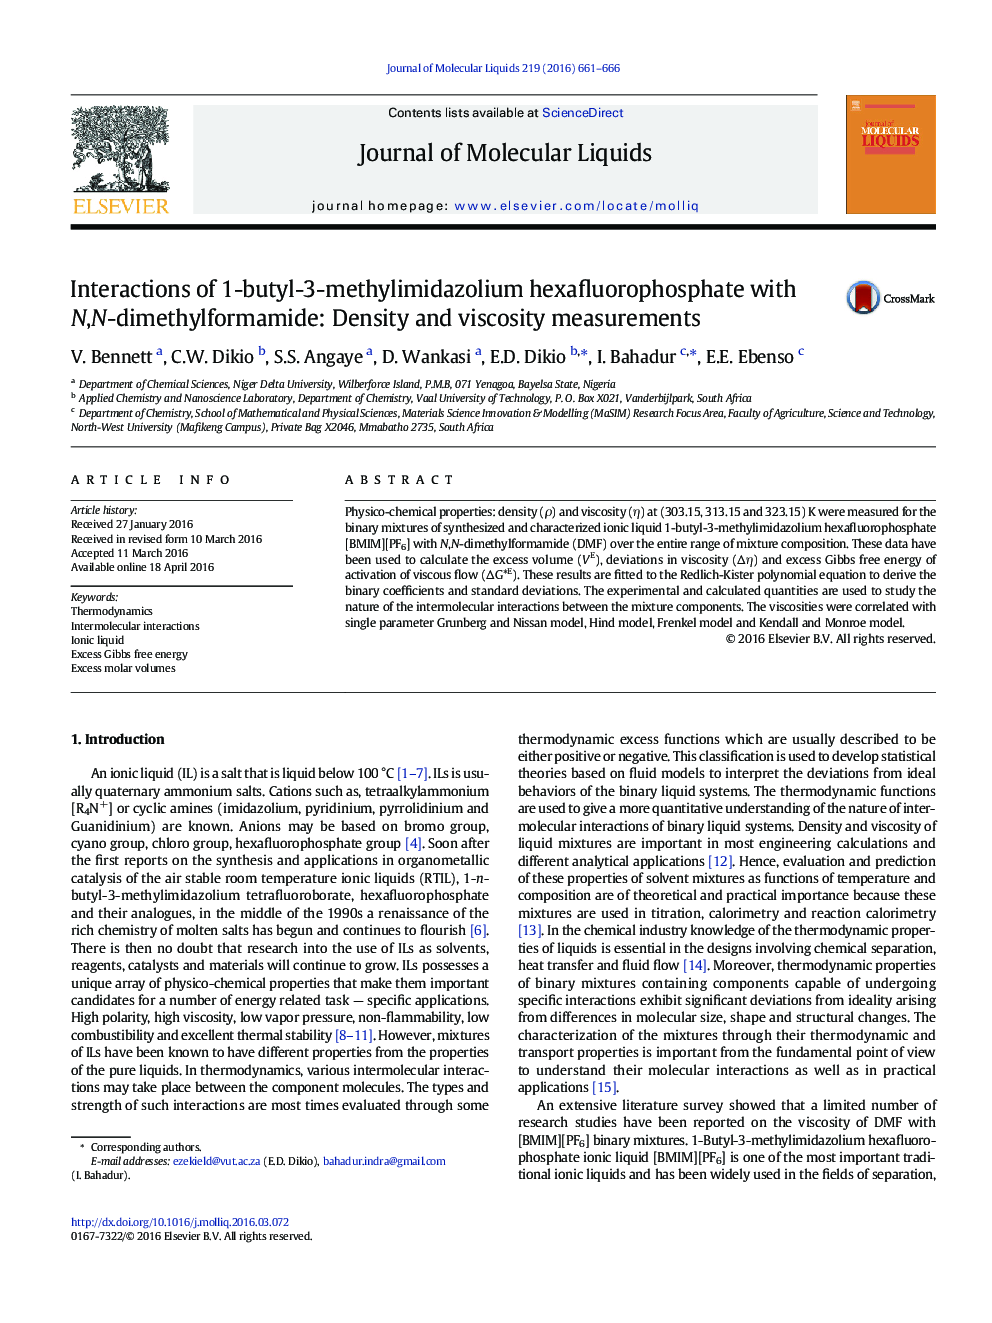 Interactions of 1-butyl-3-methylimidazolium hexafluorophosphate with N,N-dimethylformamide: Density and viscosity measurements